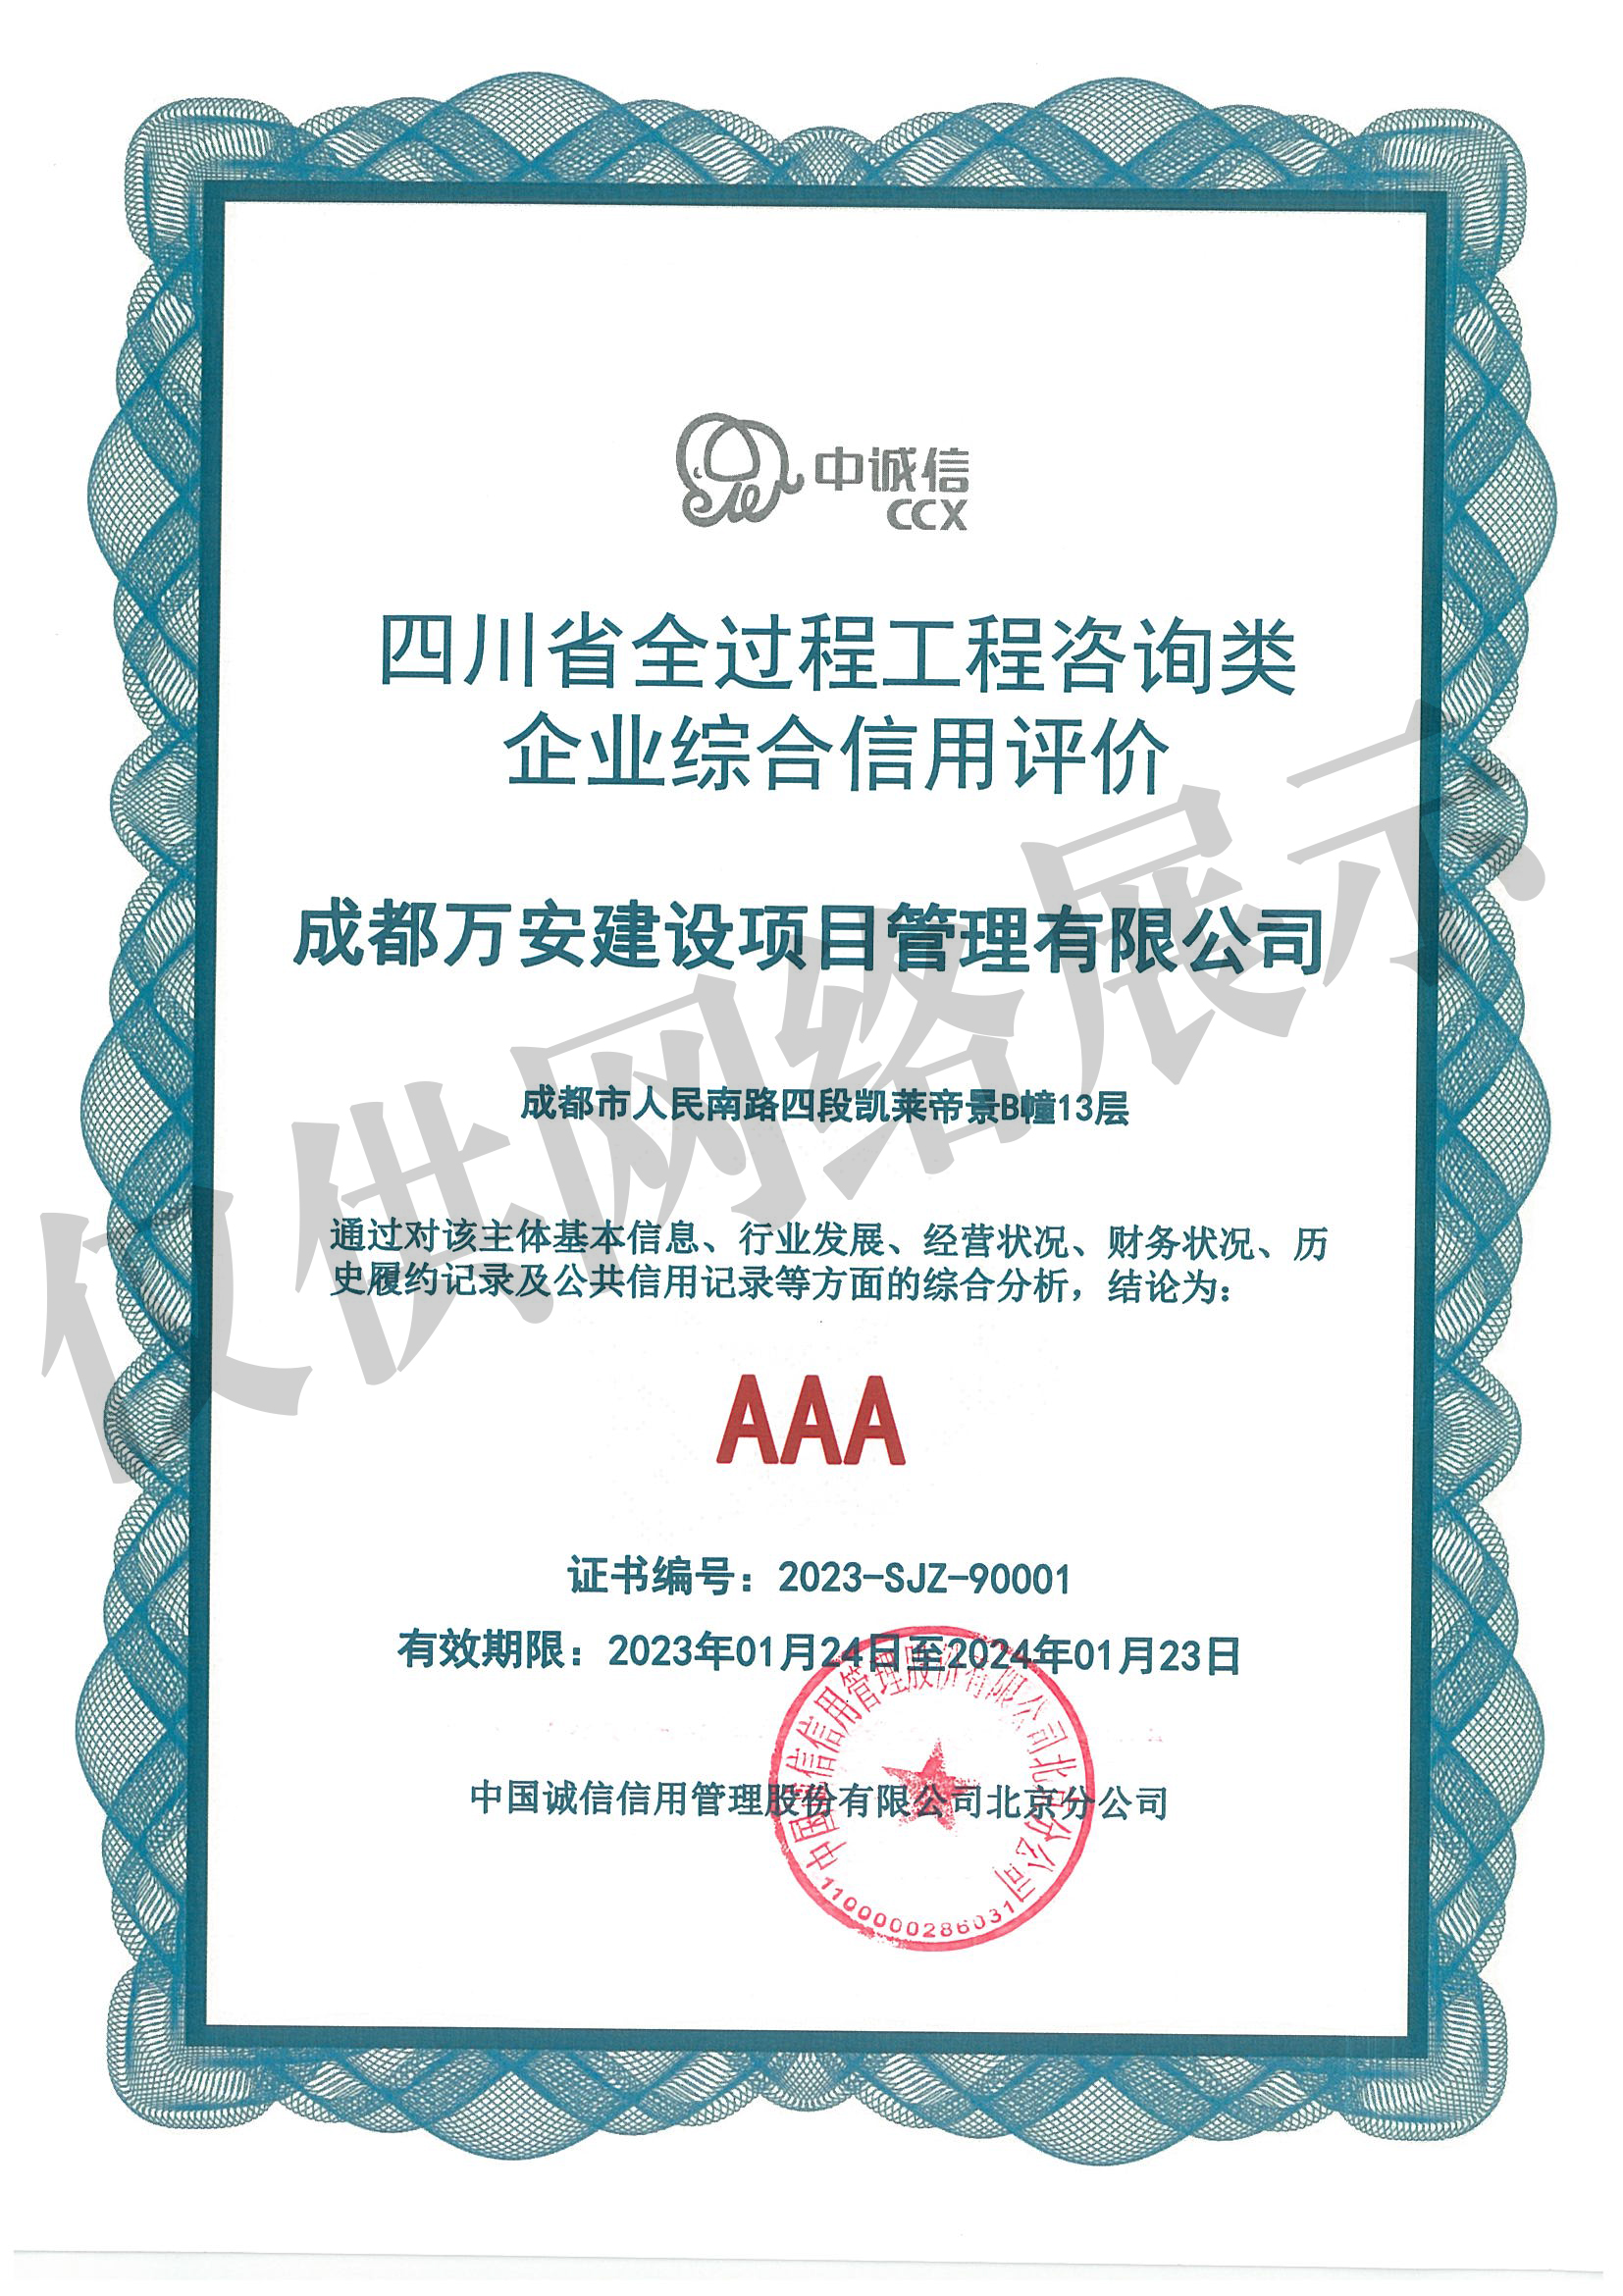 中国全过程工程咨询企业AAA综合信用评价